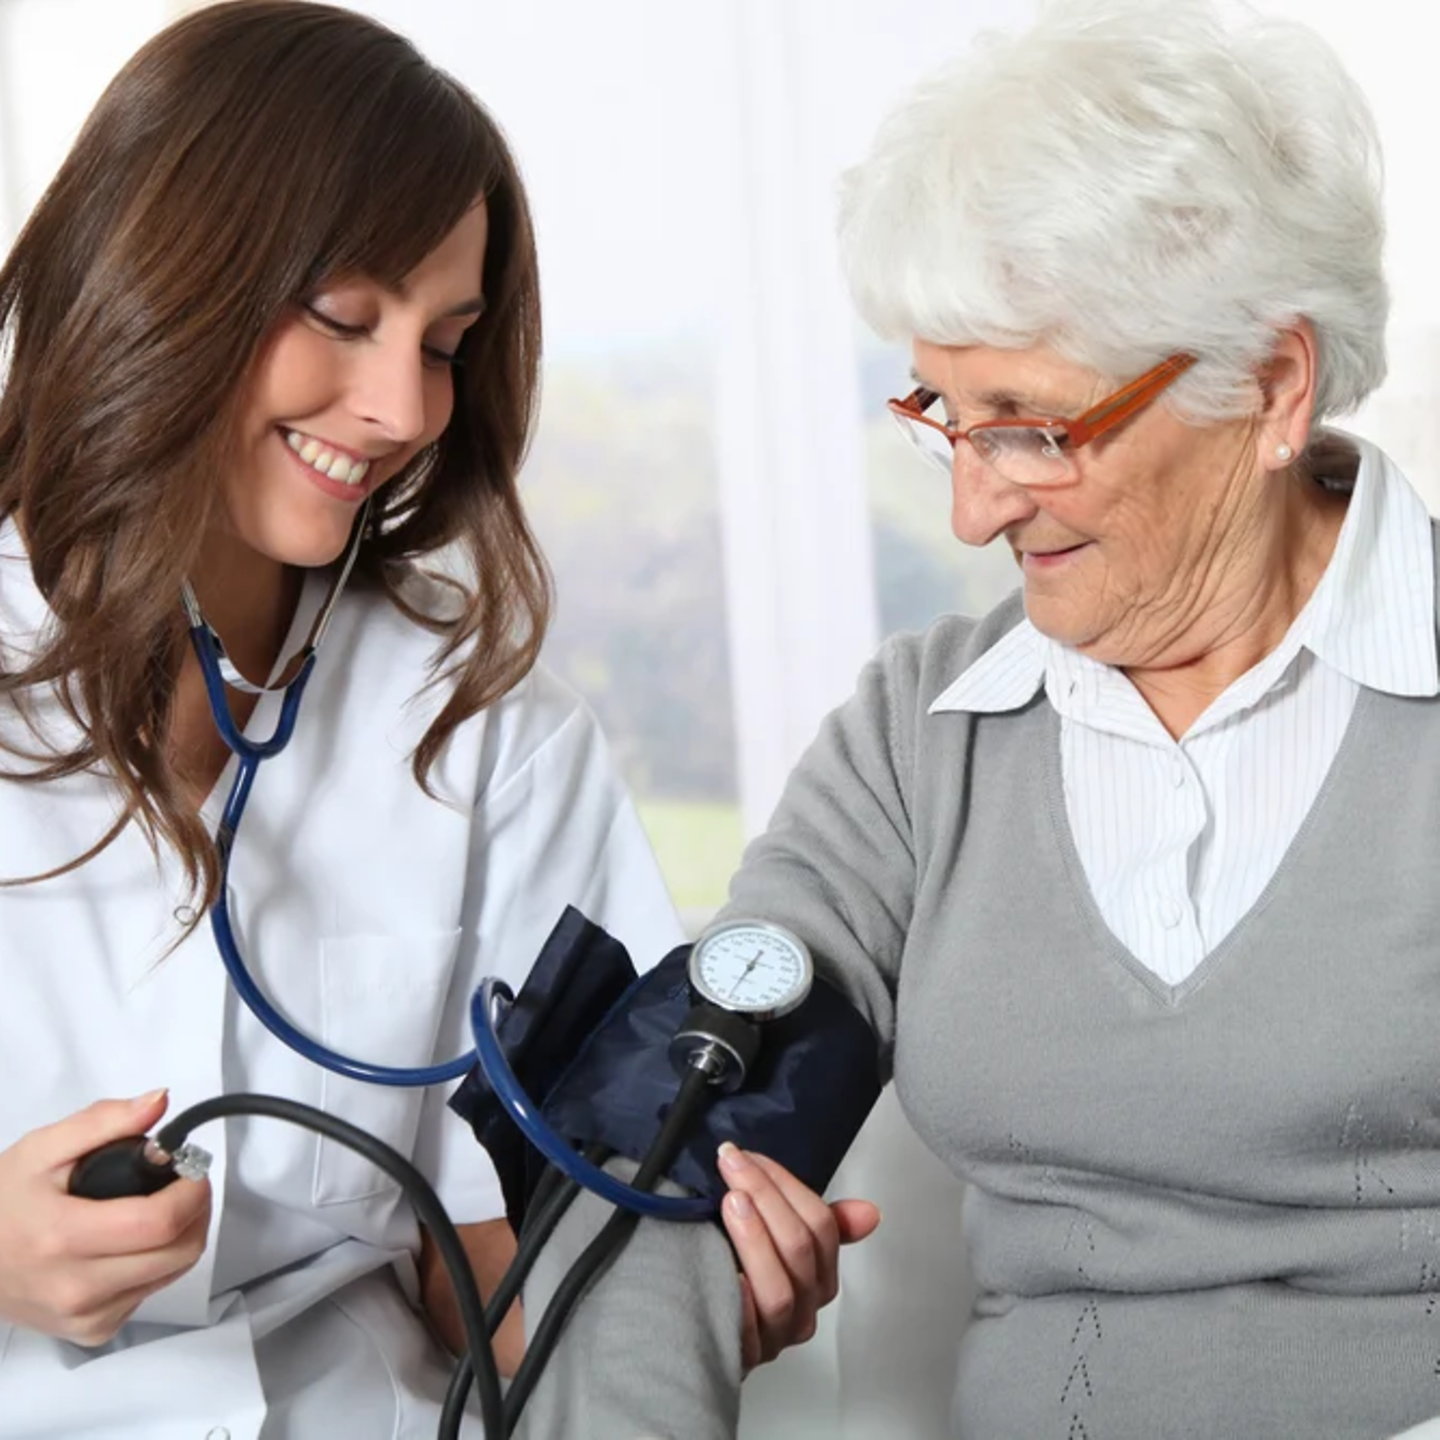 Eine Arzt-Schwester im weißen Kittel misst einer älteren Patientin mit weißen Haaren den Blutdruck.